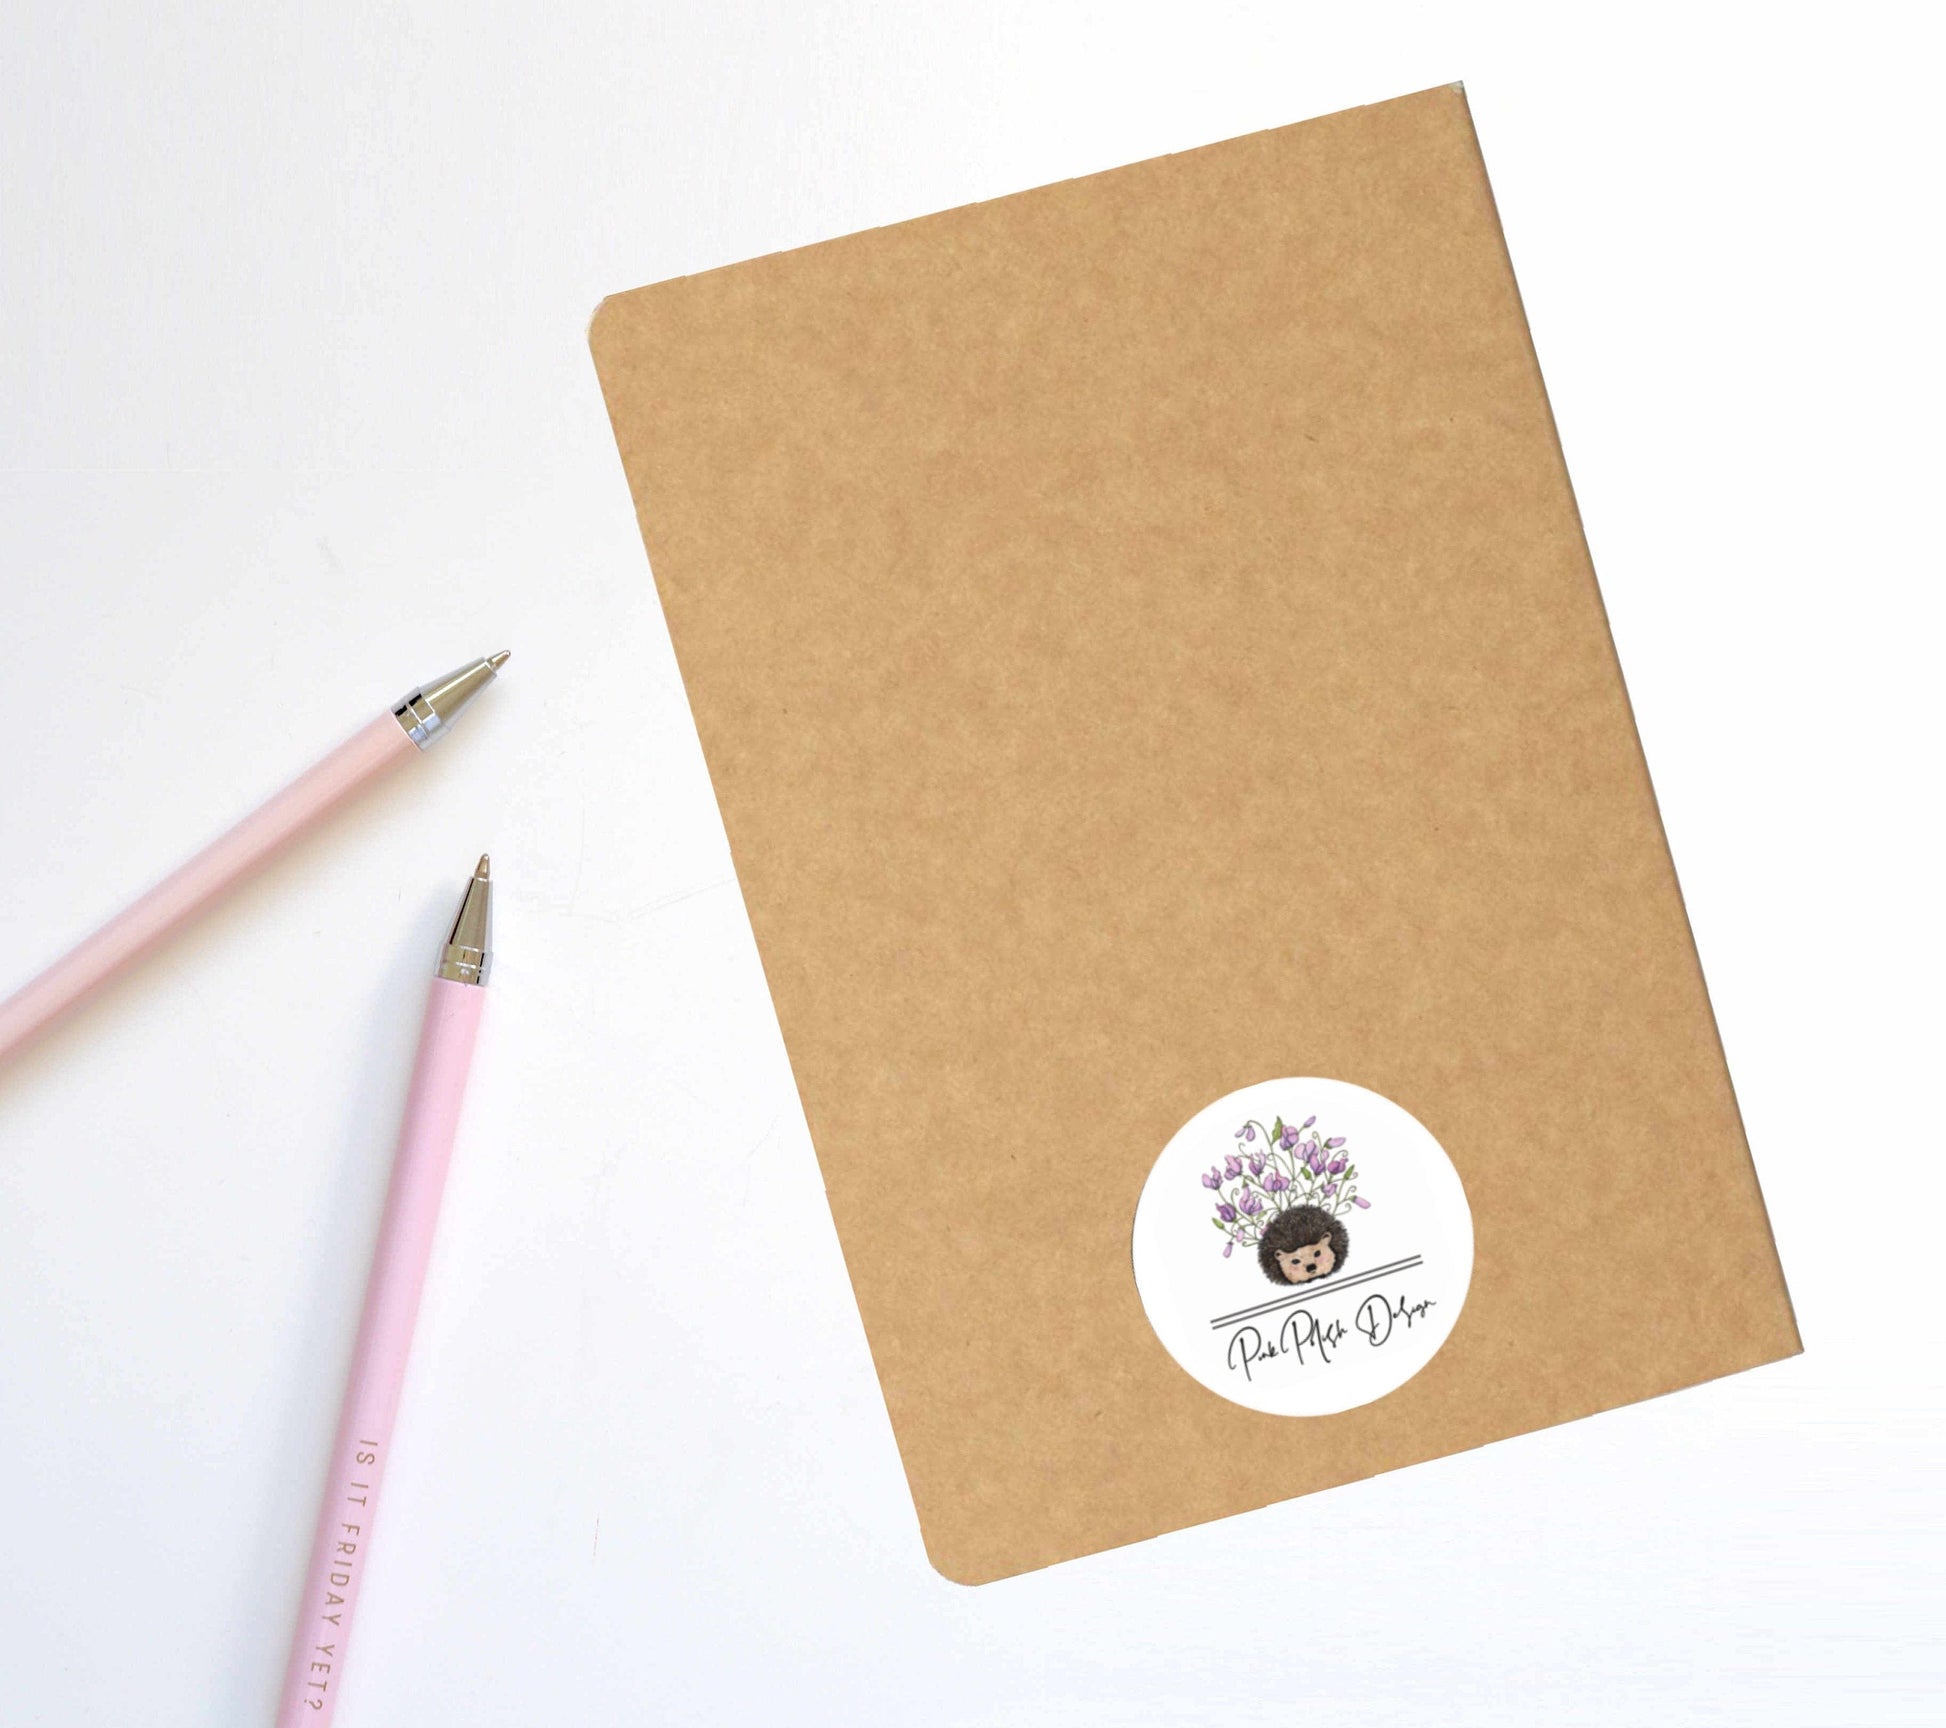 PinkPolish Design Notebook "Cool Friends" Polar Bear Inspired Notebook / Sketchbook / Journal